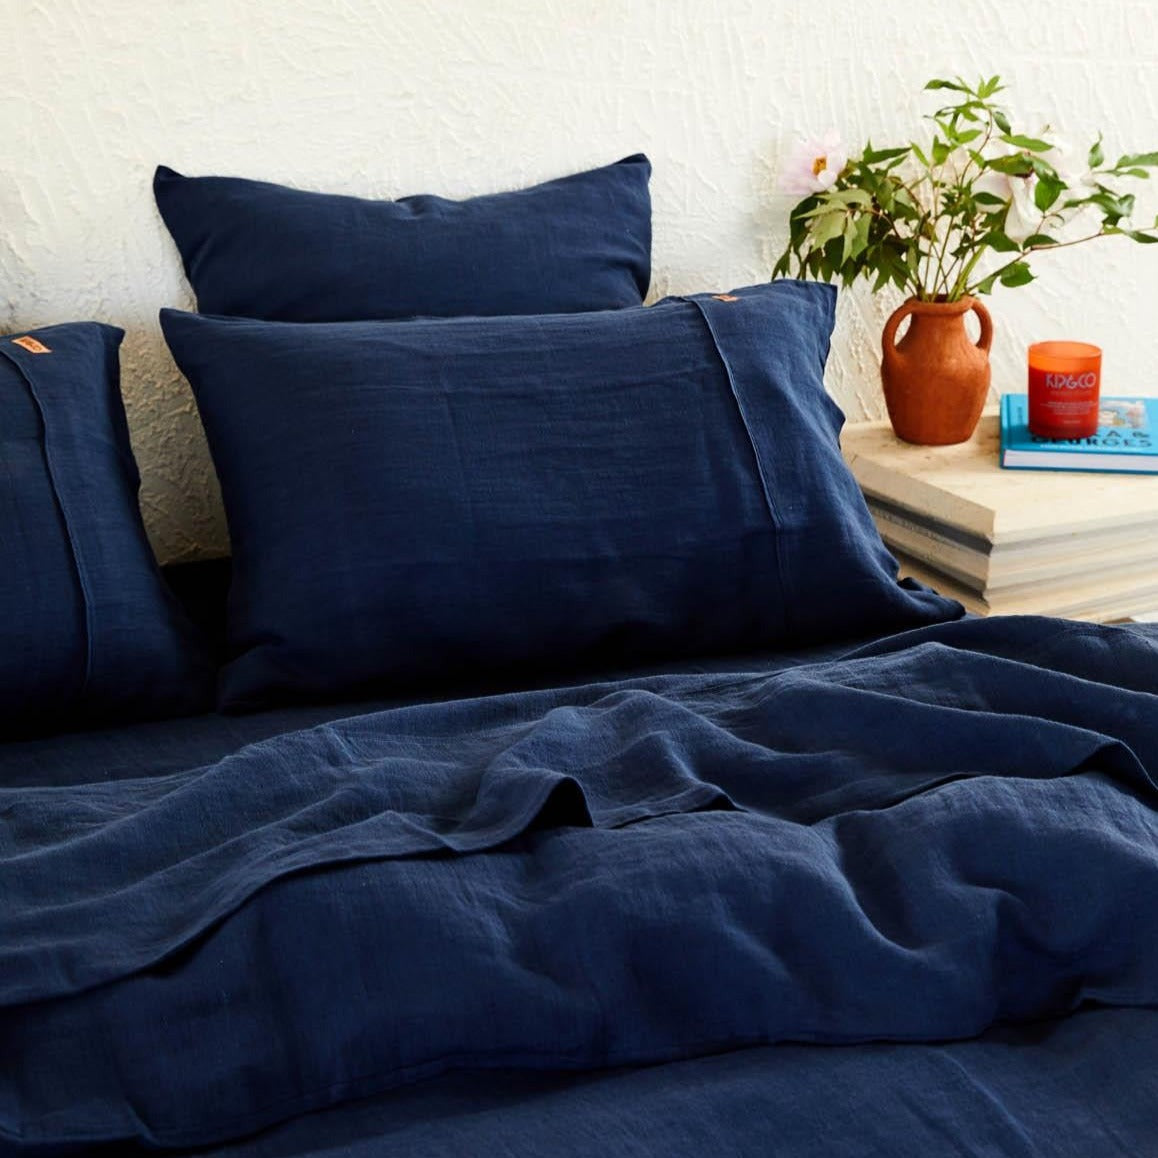 Indigo Blue Linen Pillowcase Set